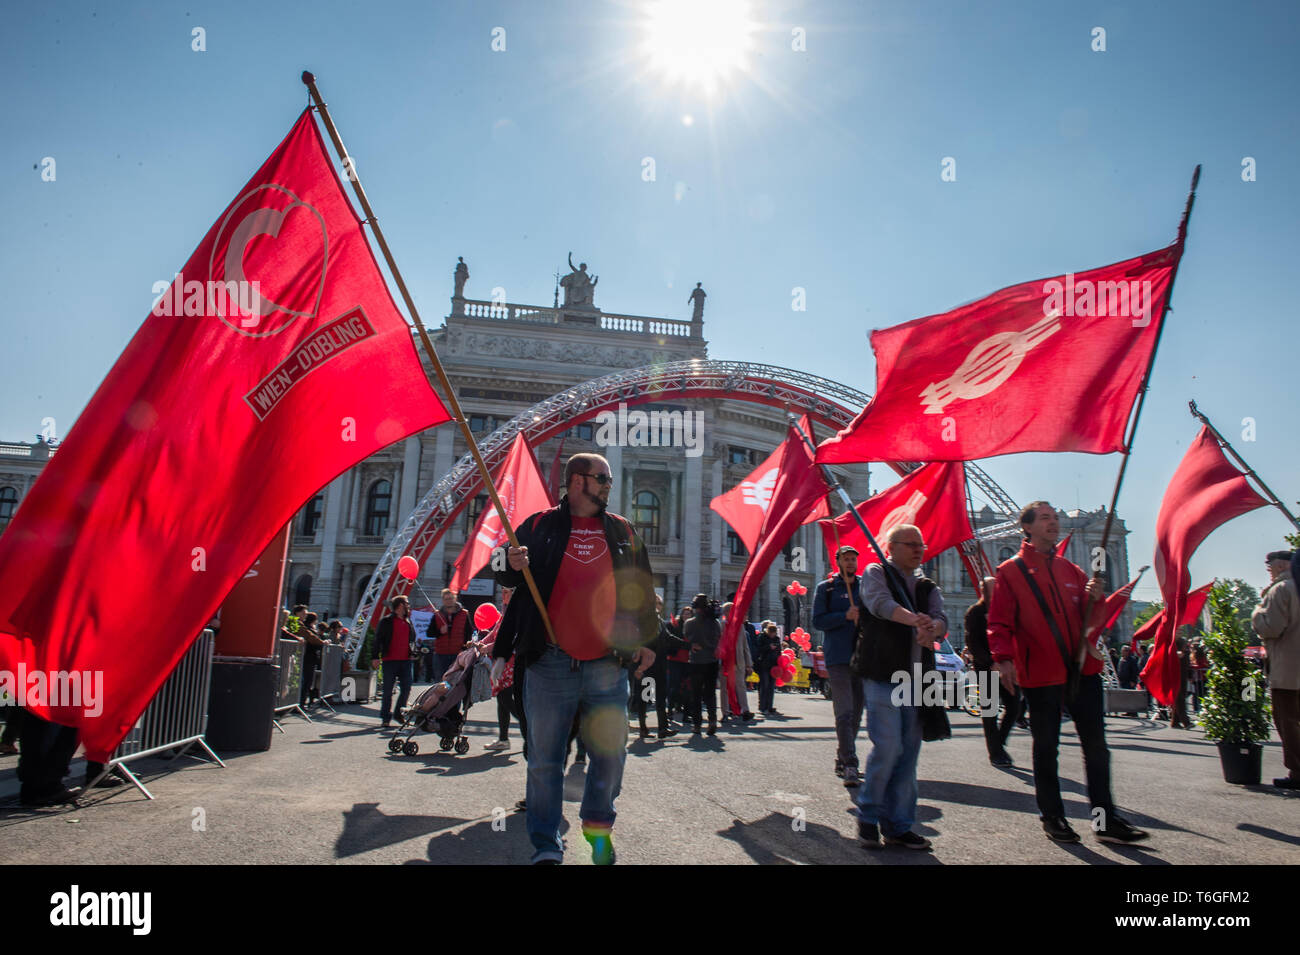 Vienne, Autriche. 1er mai 2019. Les gens assistent à la parade du 1er mai à Vienne, Autriche, le 1 mai 2019. Le Parti social-démocrate d'Autriche (SPO) a organisé le défilé le mercredi à Vienne. Credit : Guo Chen/Xinhua/Alamy Live News Banque D'Images